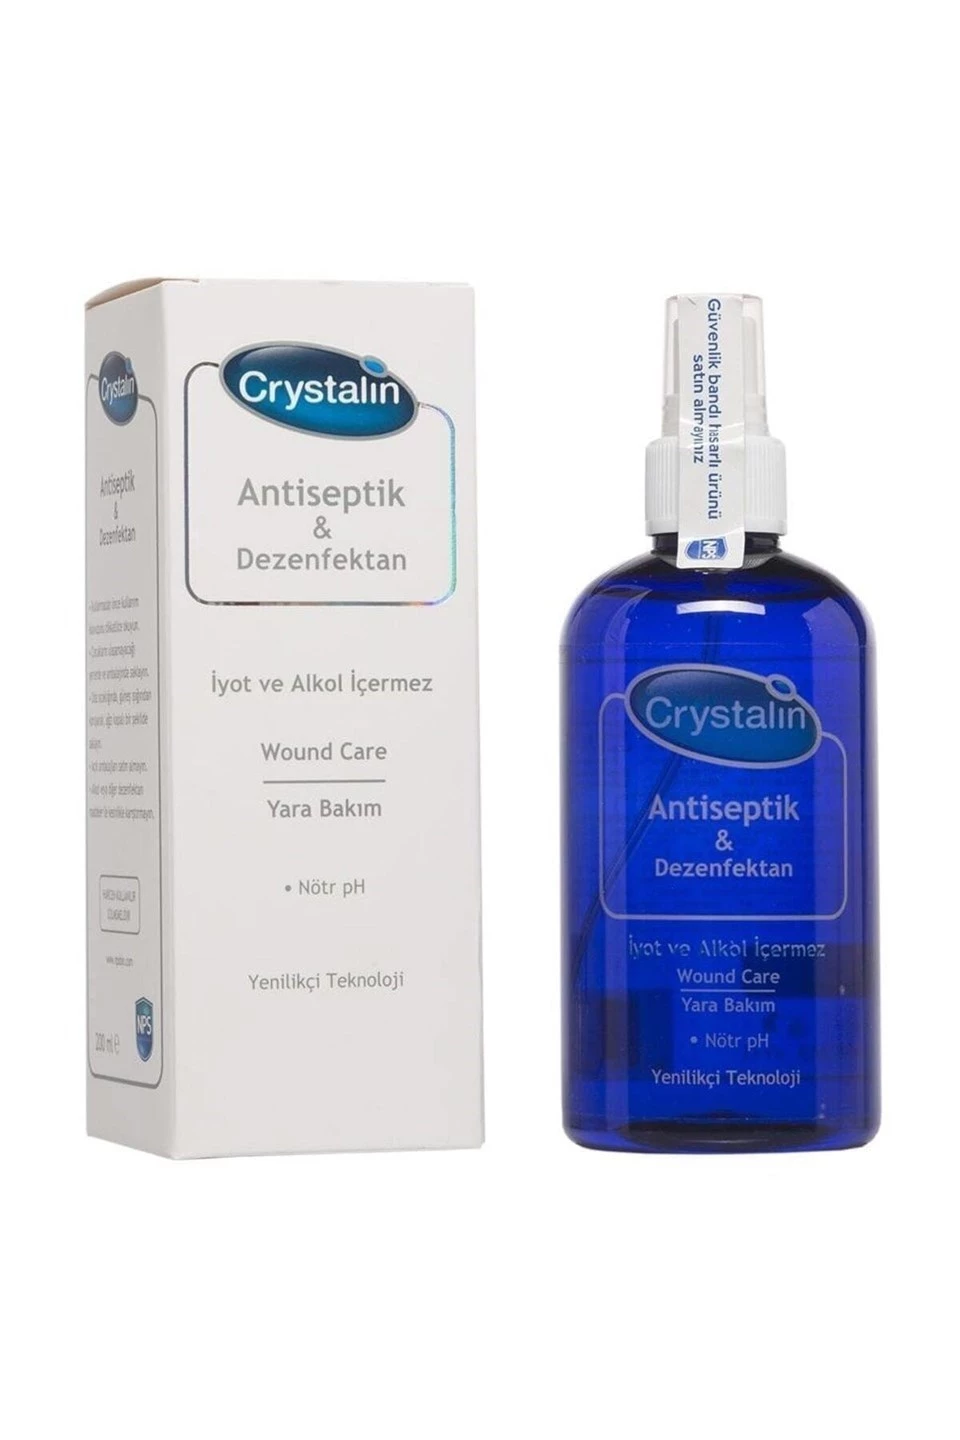 Crystalin Antiseptik & Dezenfektan Sprey 200 ml